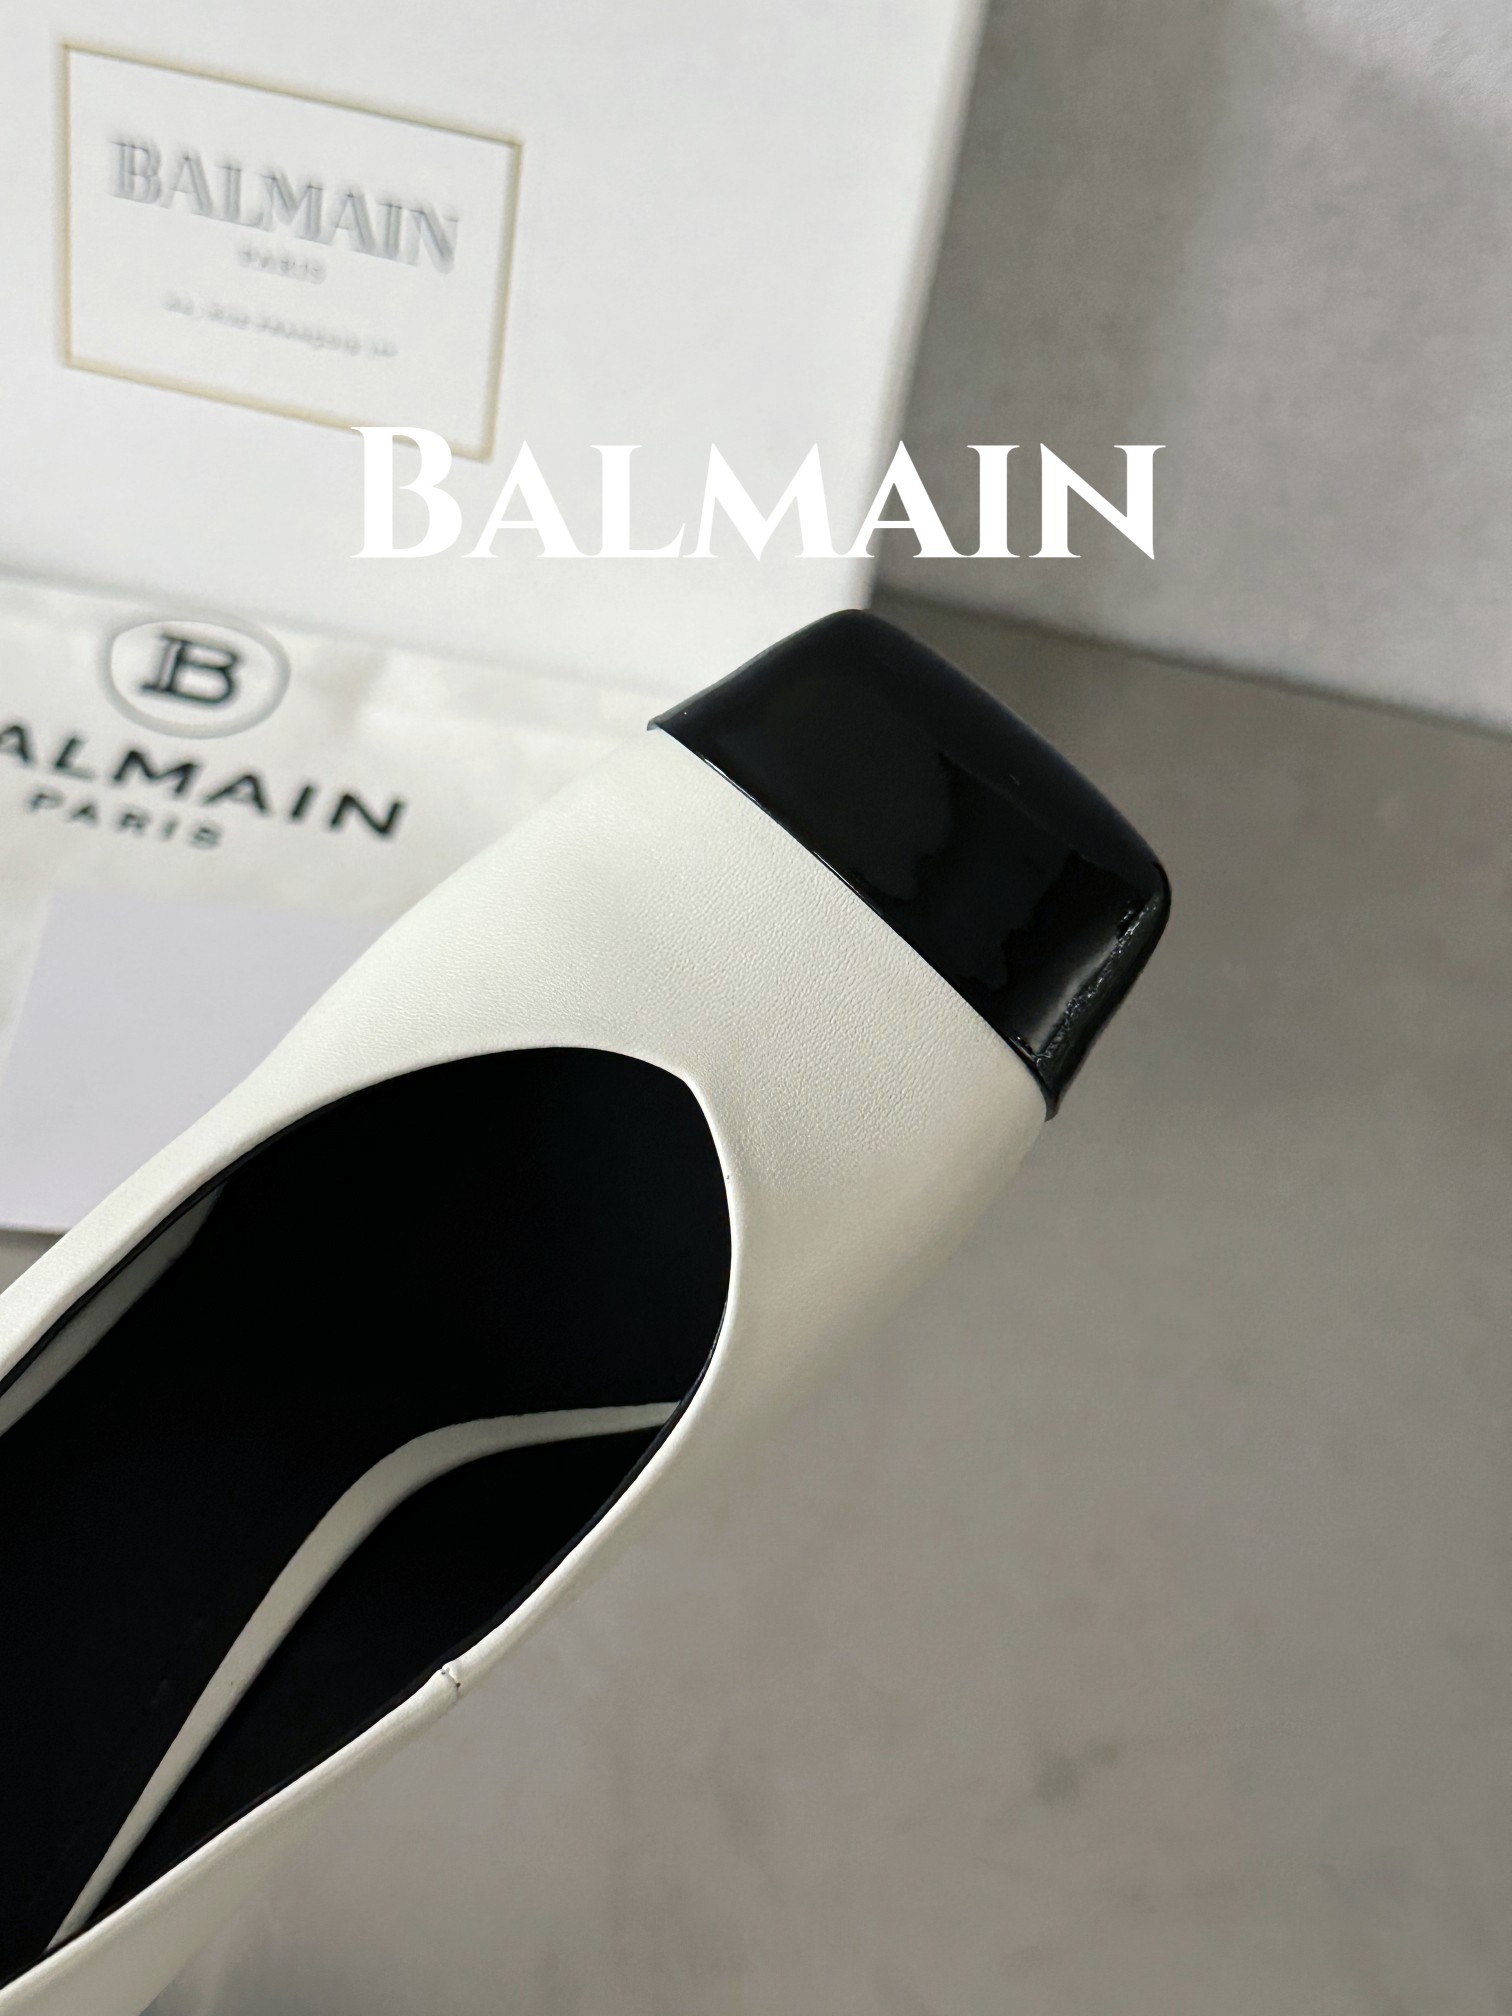 Balmain巴尔曼巴尔曼方头酒杯跟单鞋此款彩色皮革酒杯跟方头会标图案海外订购原版1:1完美复刻！历时三